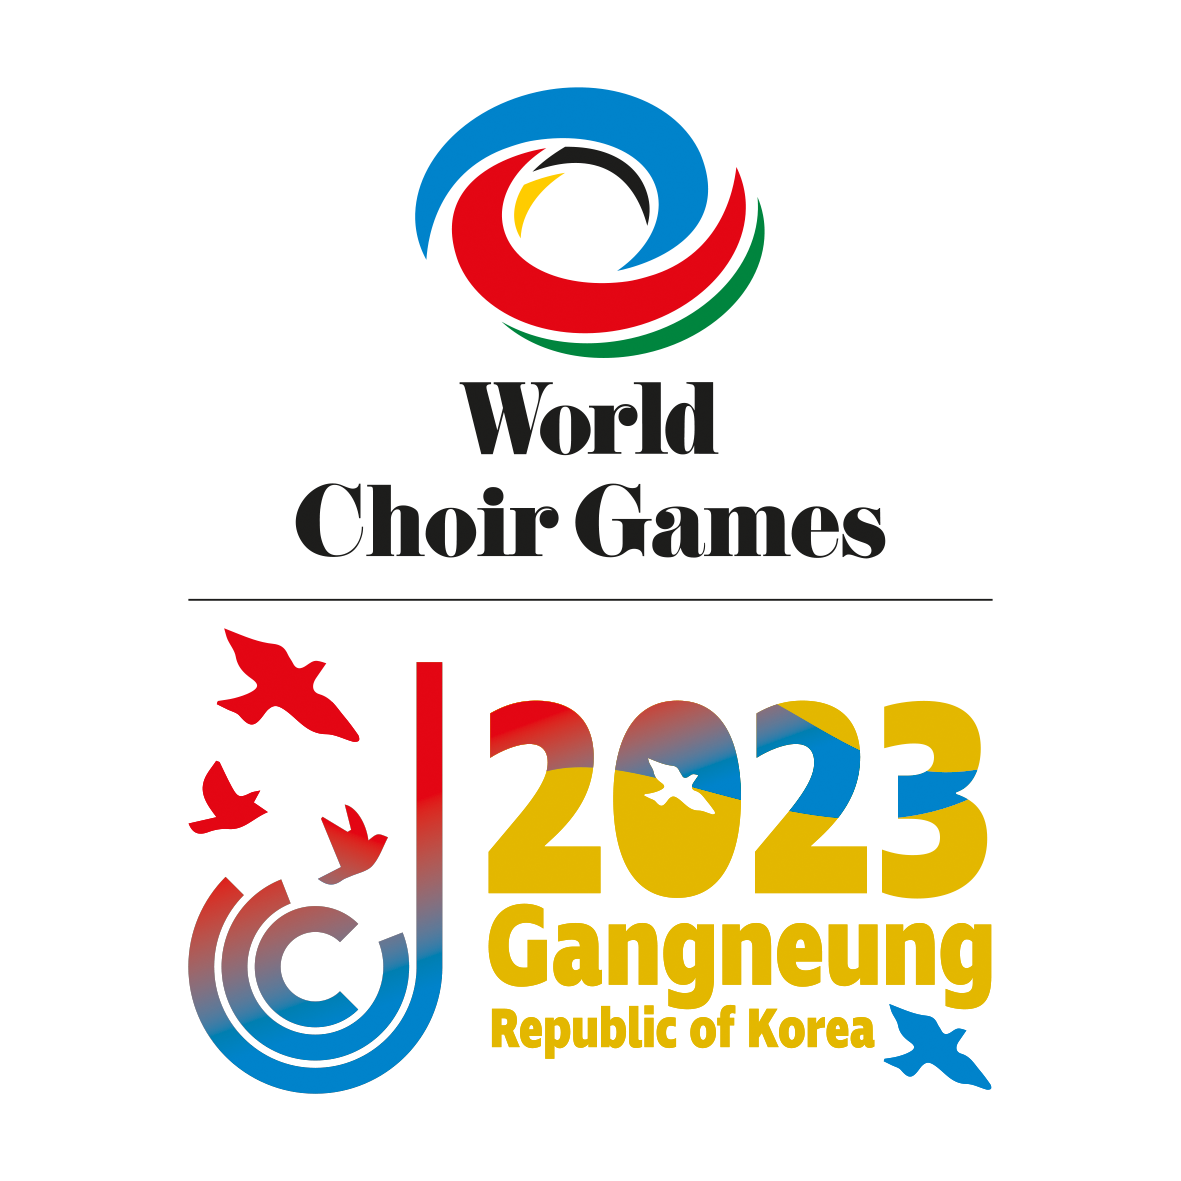 2023 강릉 세계합창대회 (World Choir Games 2023 Gangneung Republic of Korea)